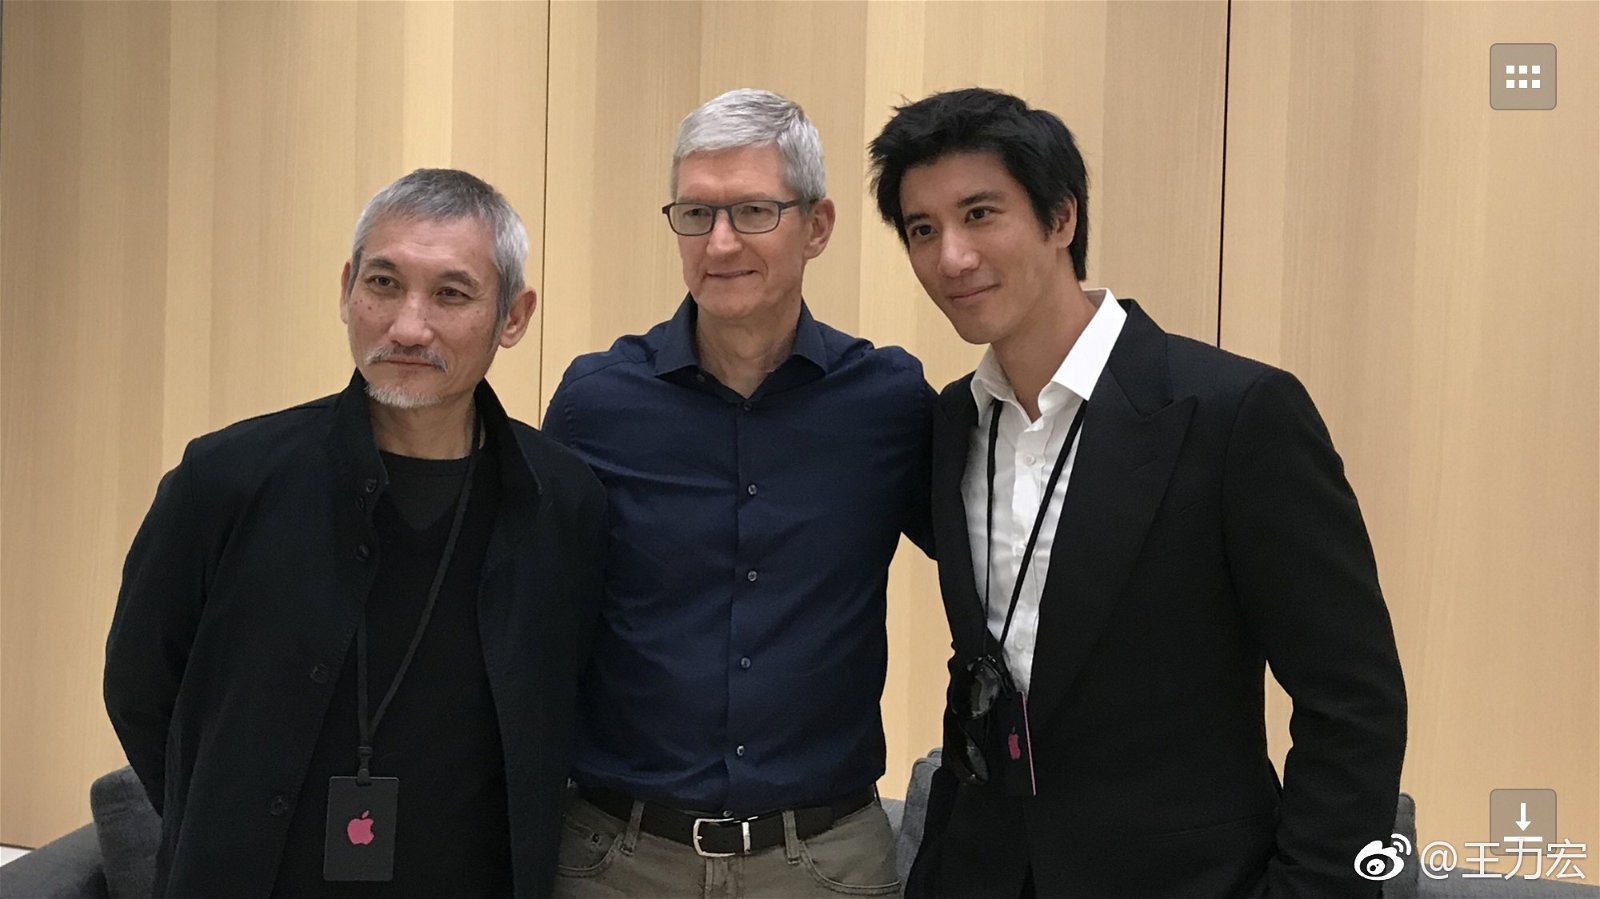 王力宏与导演徐克，以及苹果执行长库克合影。